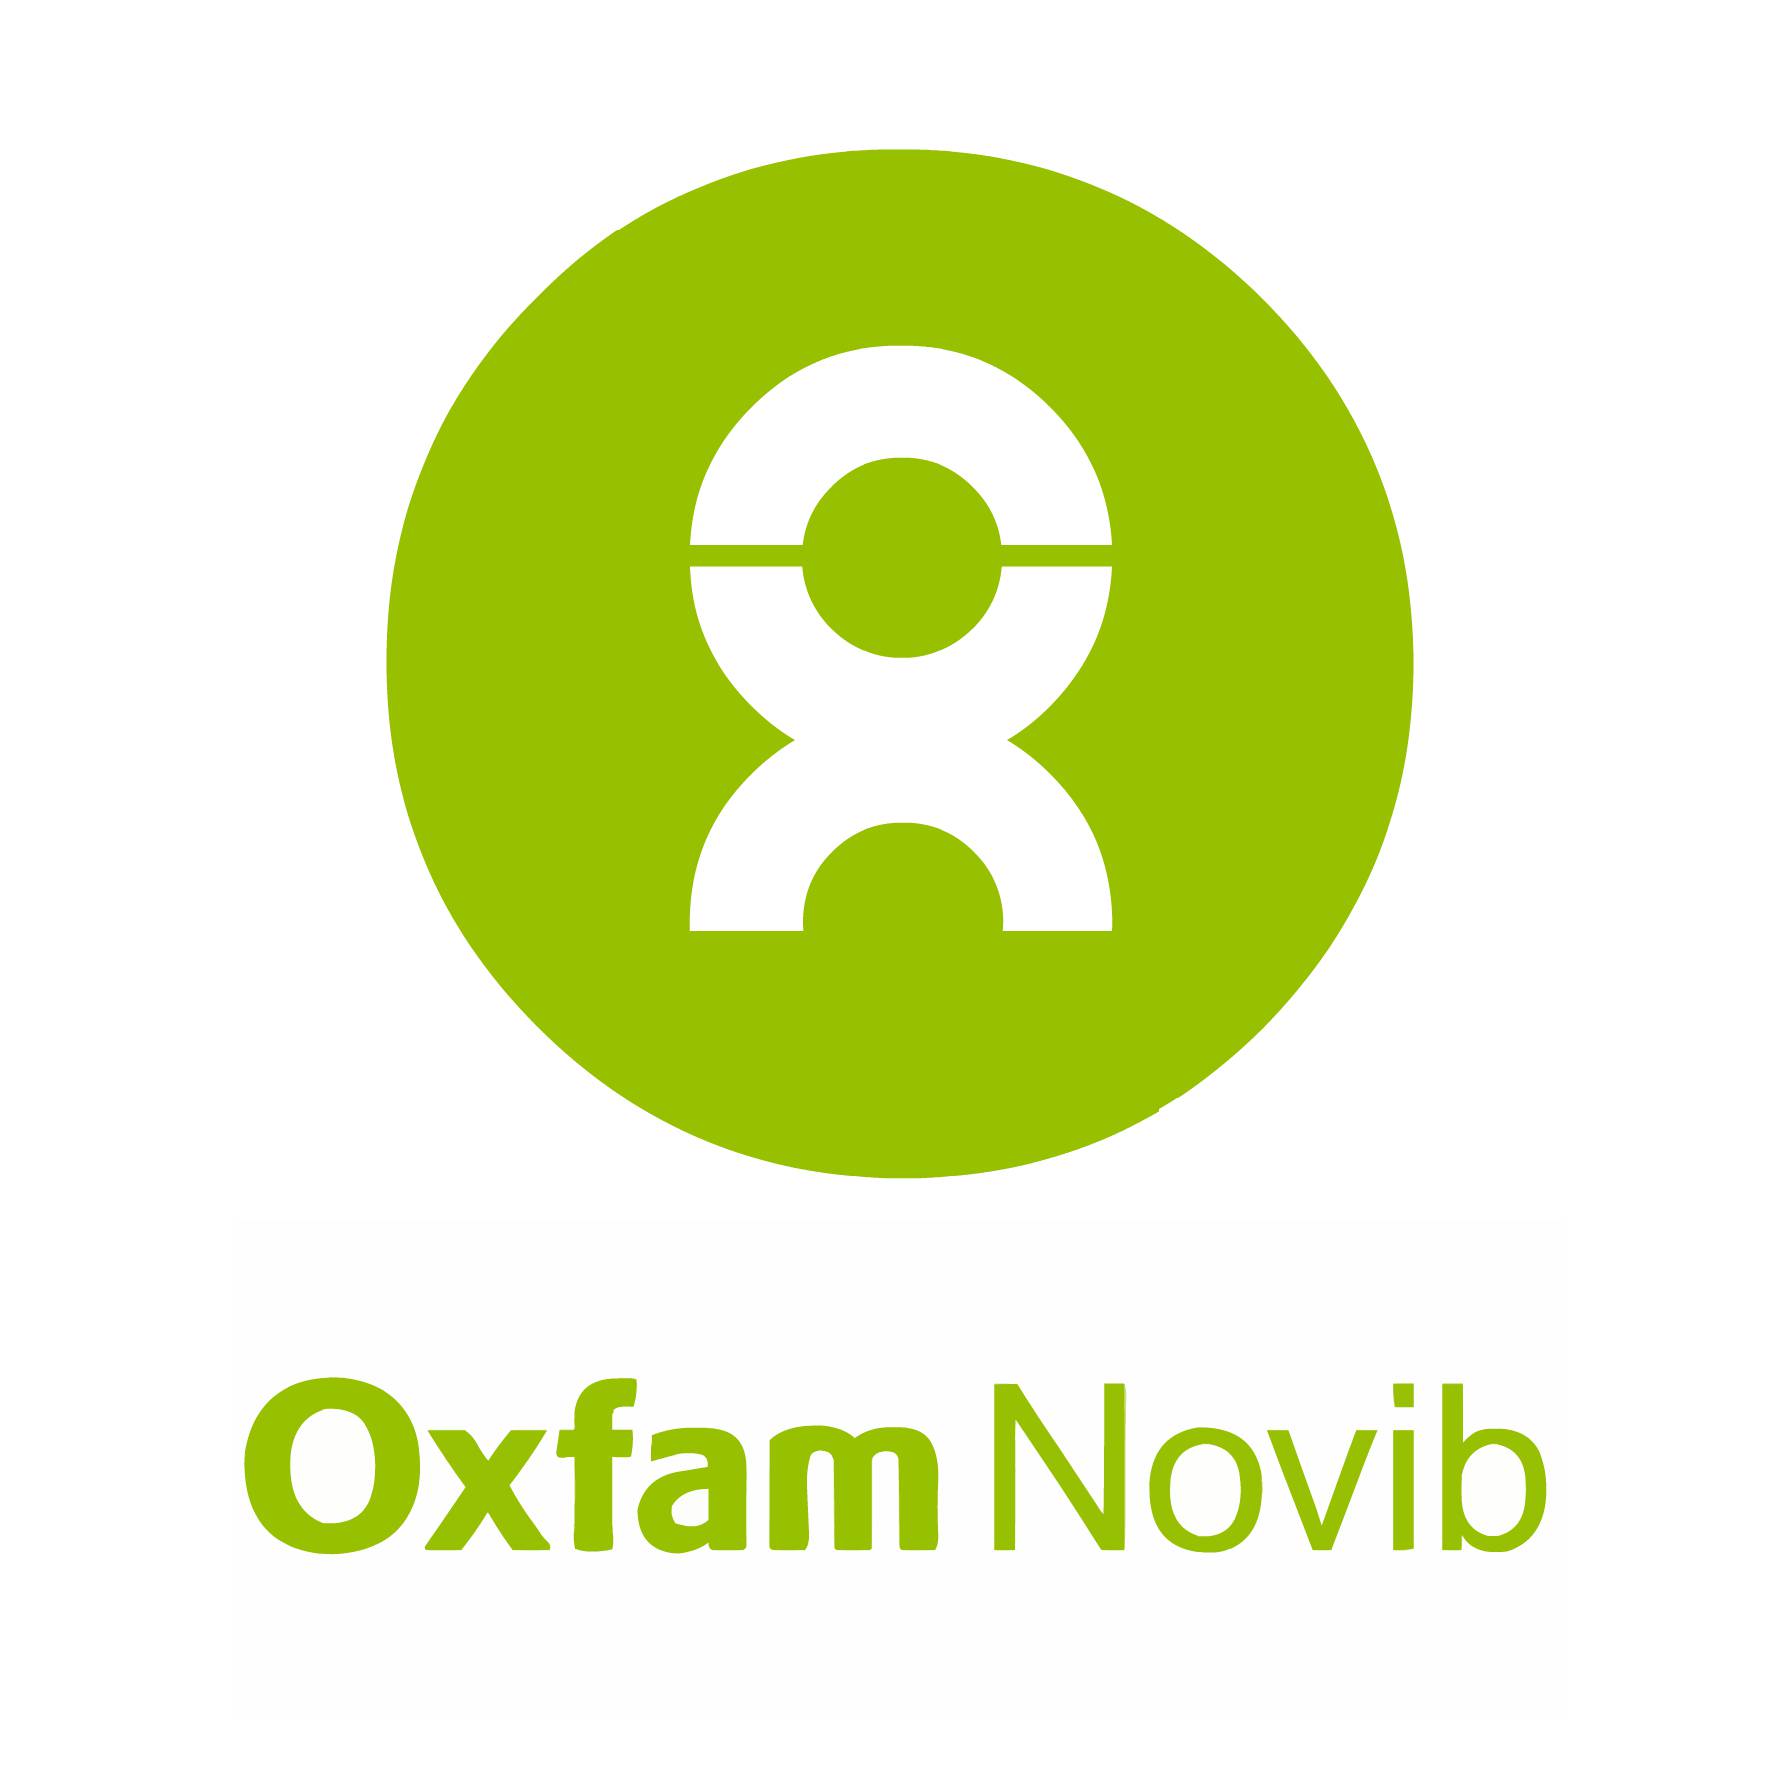 Stichting Oxfam Novib (Oxfam)